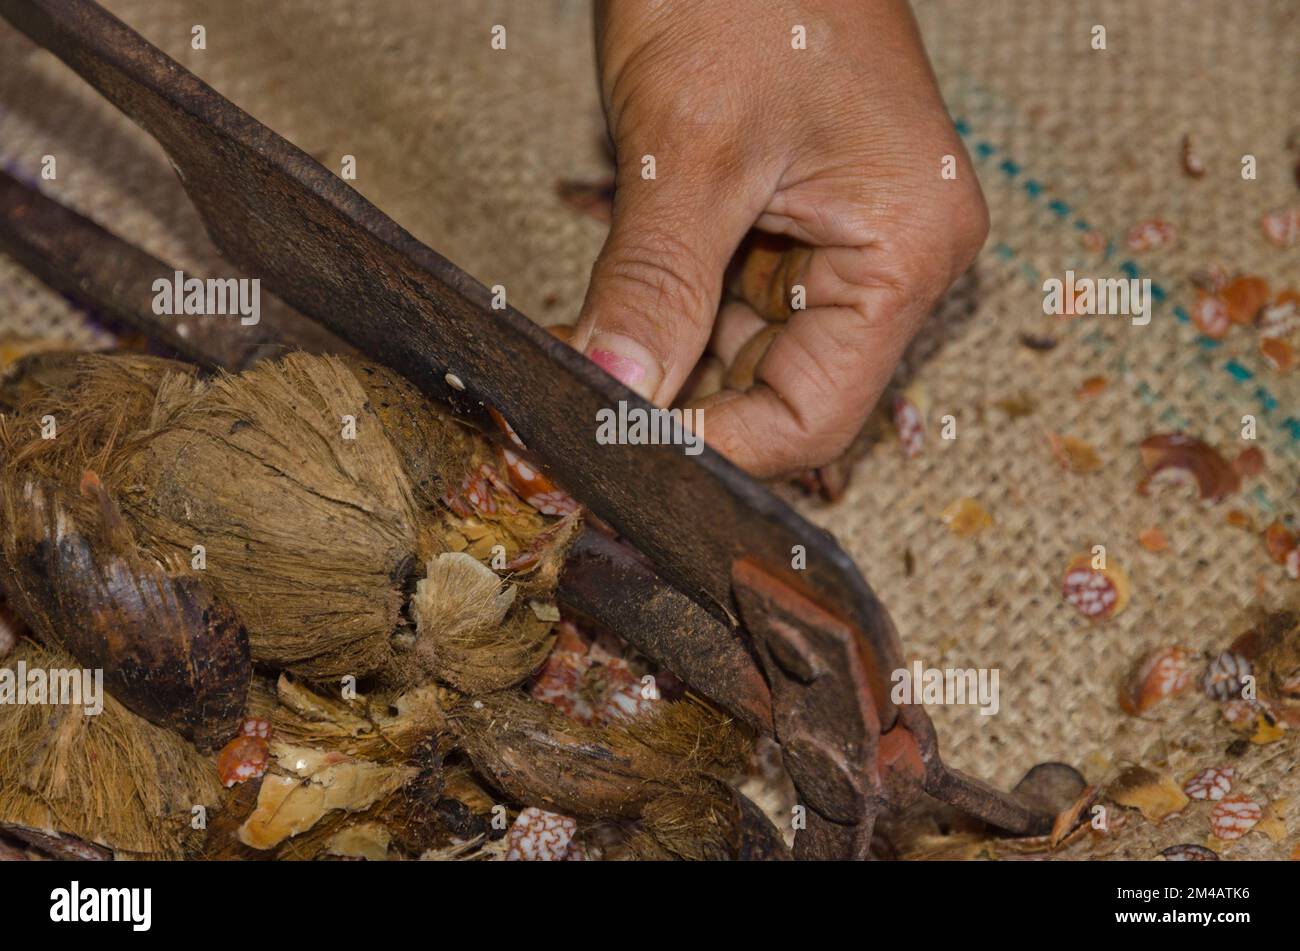 La coupe de la noix de bételoque fait une petite vie pour quelques Adi Gallo-gens, vivant le long de la rue près de la confluence des rivières Siang et Yomgo Banque D'Images